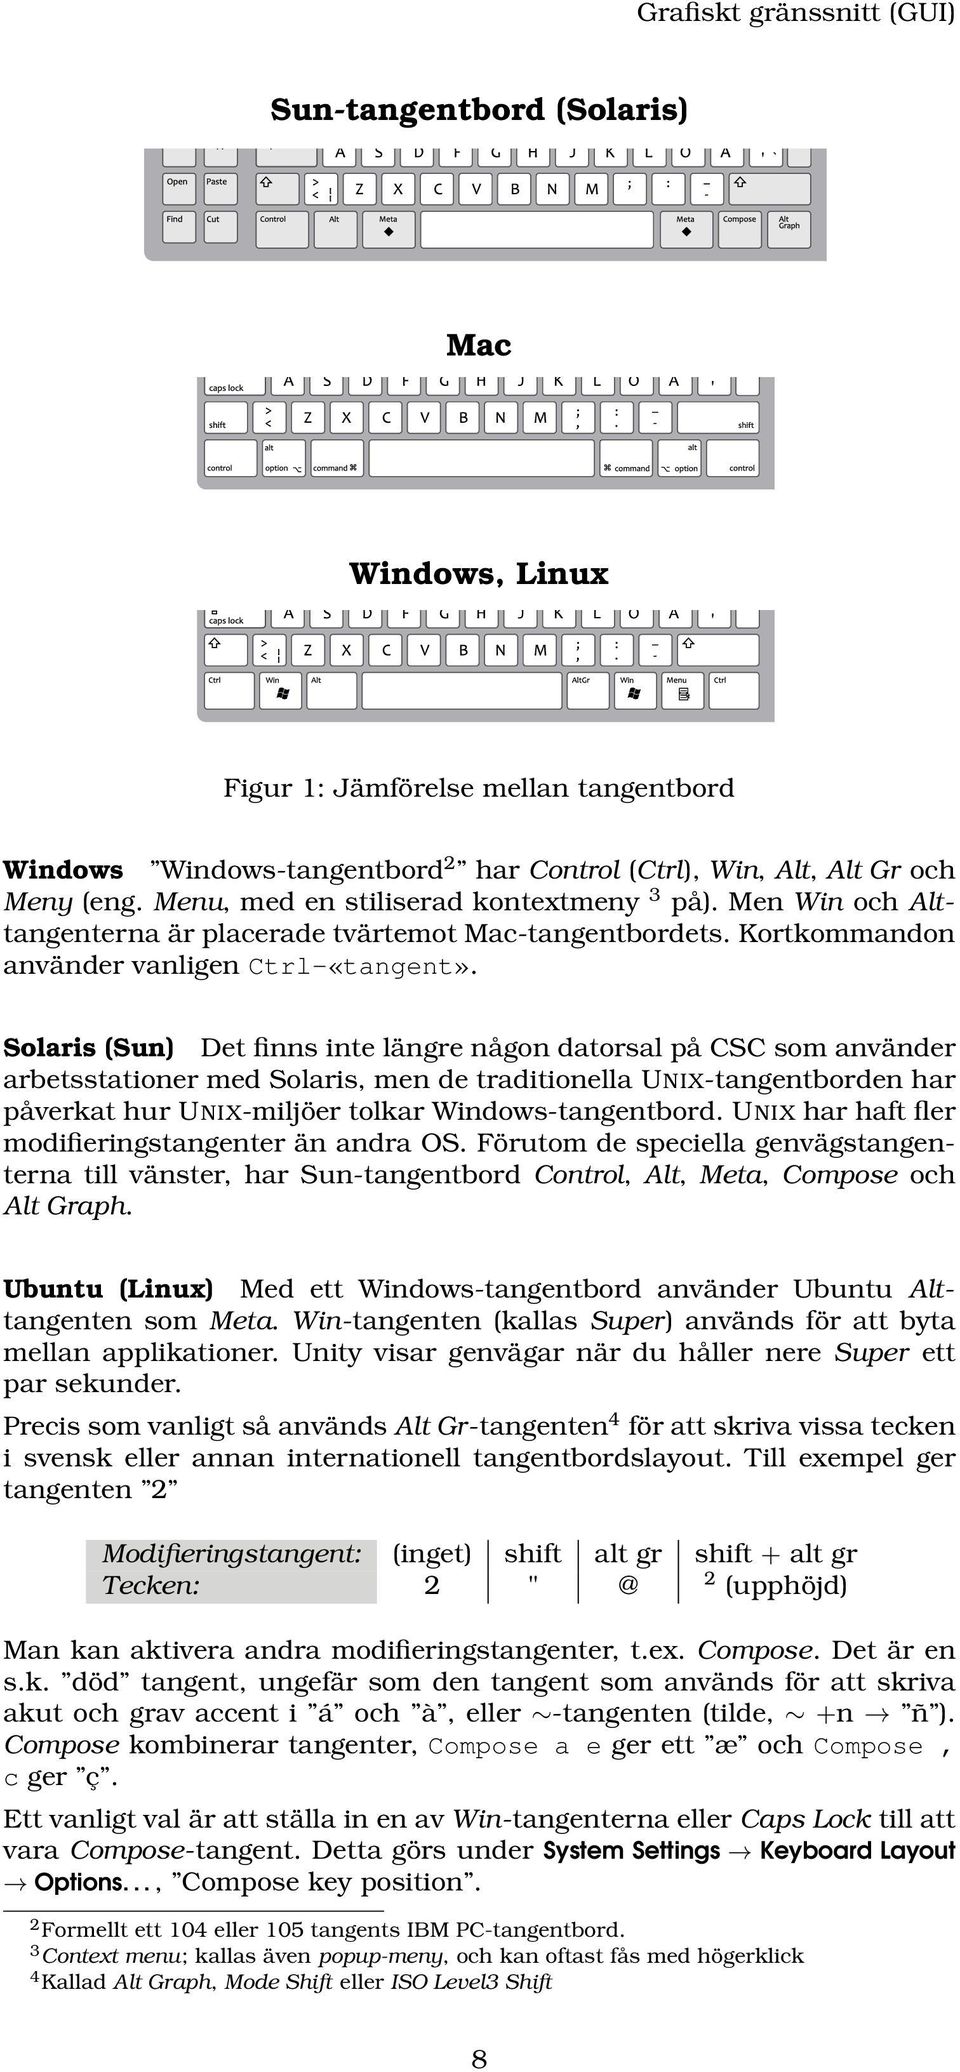 Solaris (Sun) Det finns inte längre någon datorsal på CSC som använder arbetsstationer med Solaris, men de traditionella UNIX-tangentborden har påverkat hur UNIX-miljöer tolkar Windows-tangentbord.